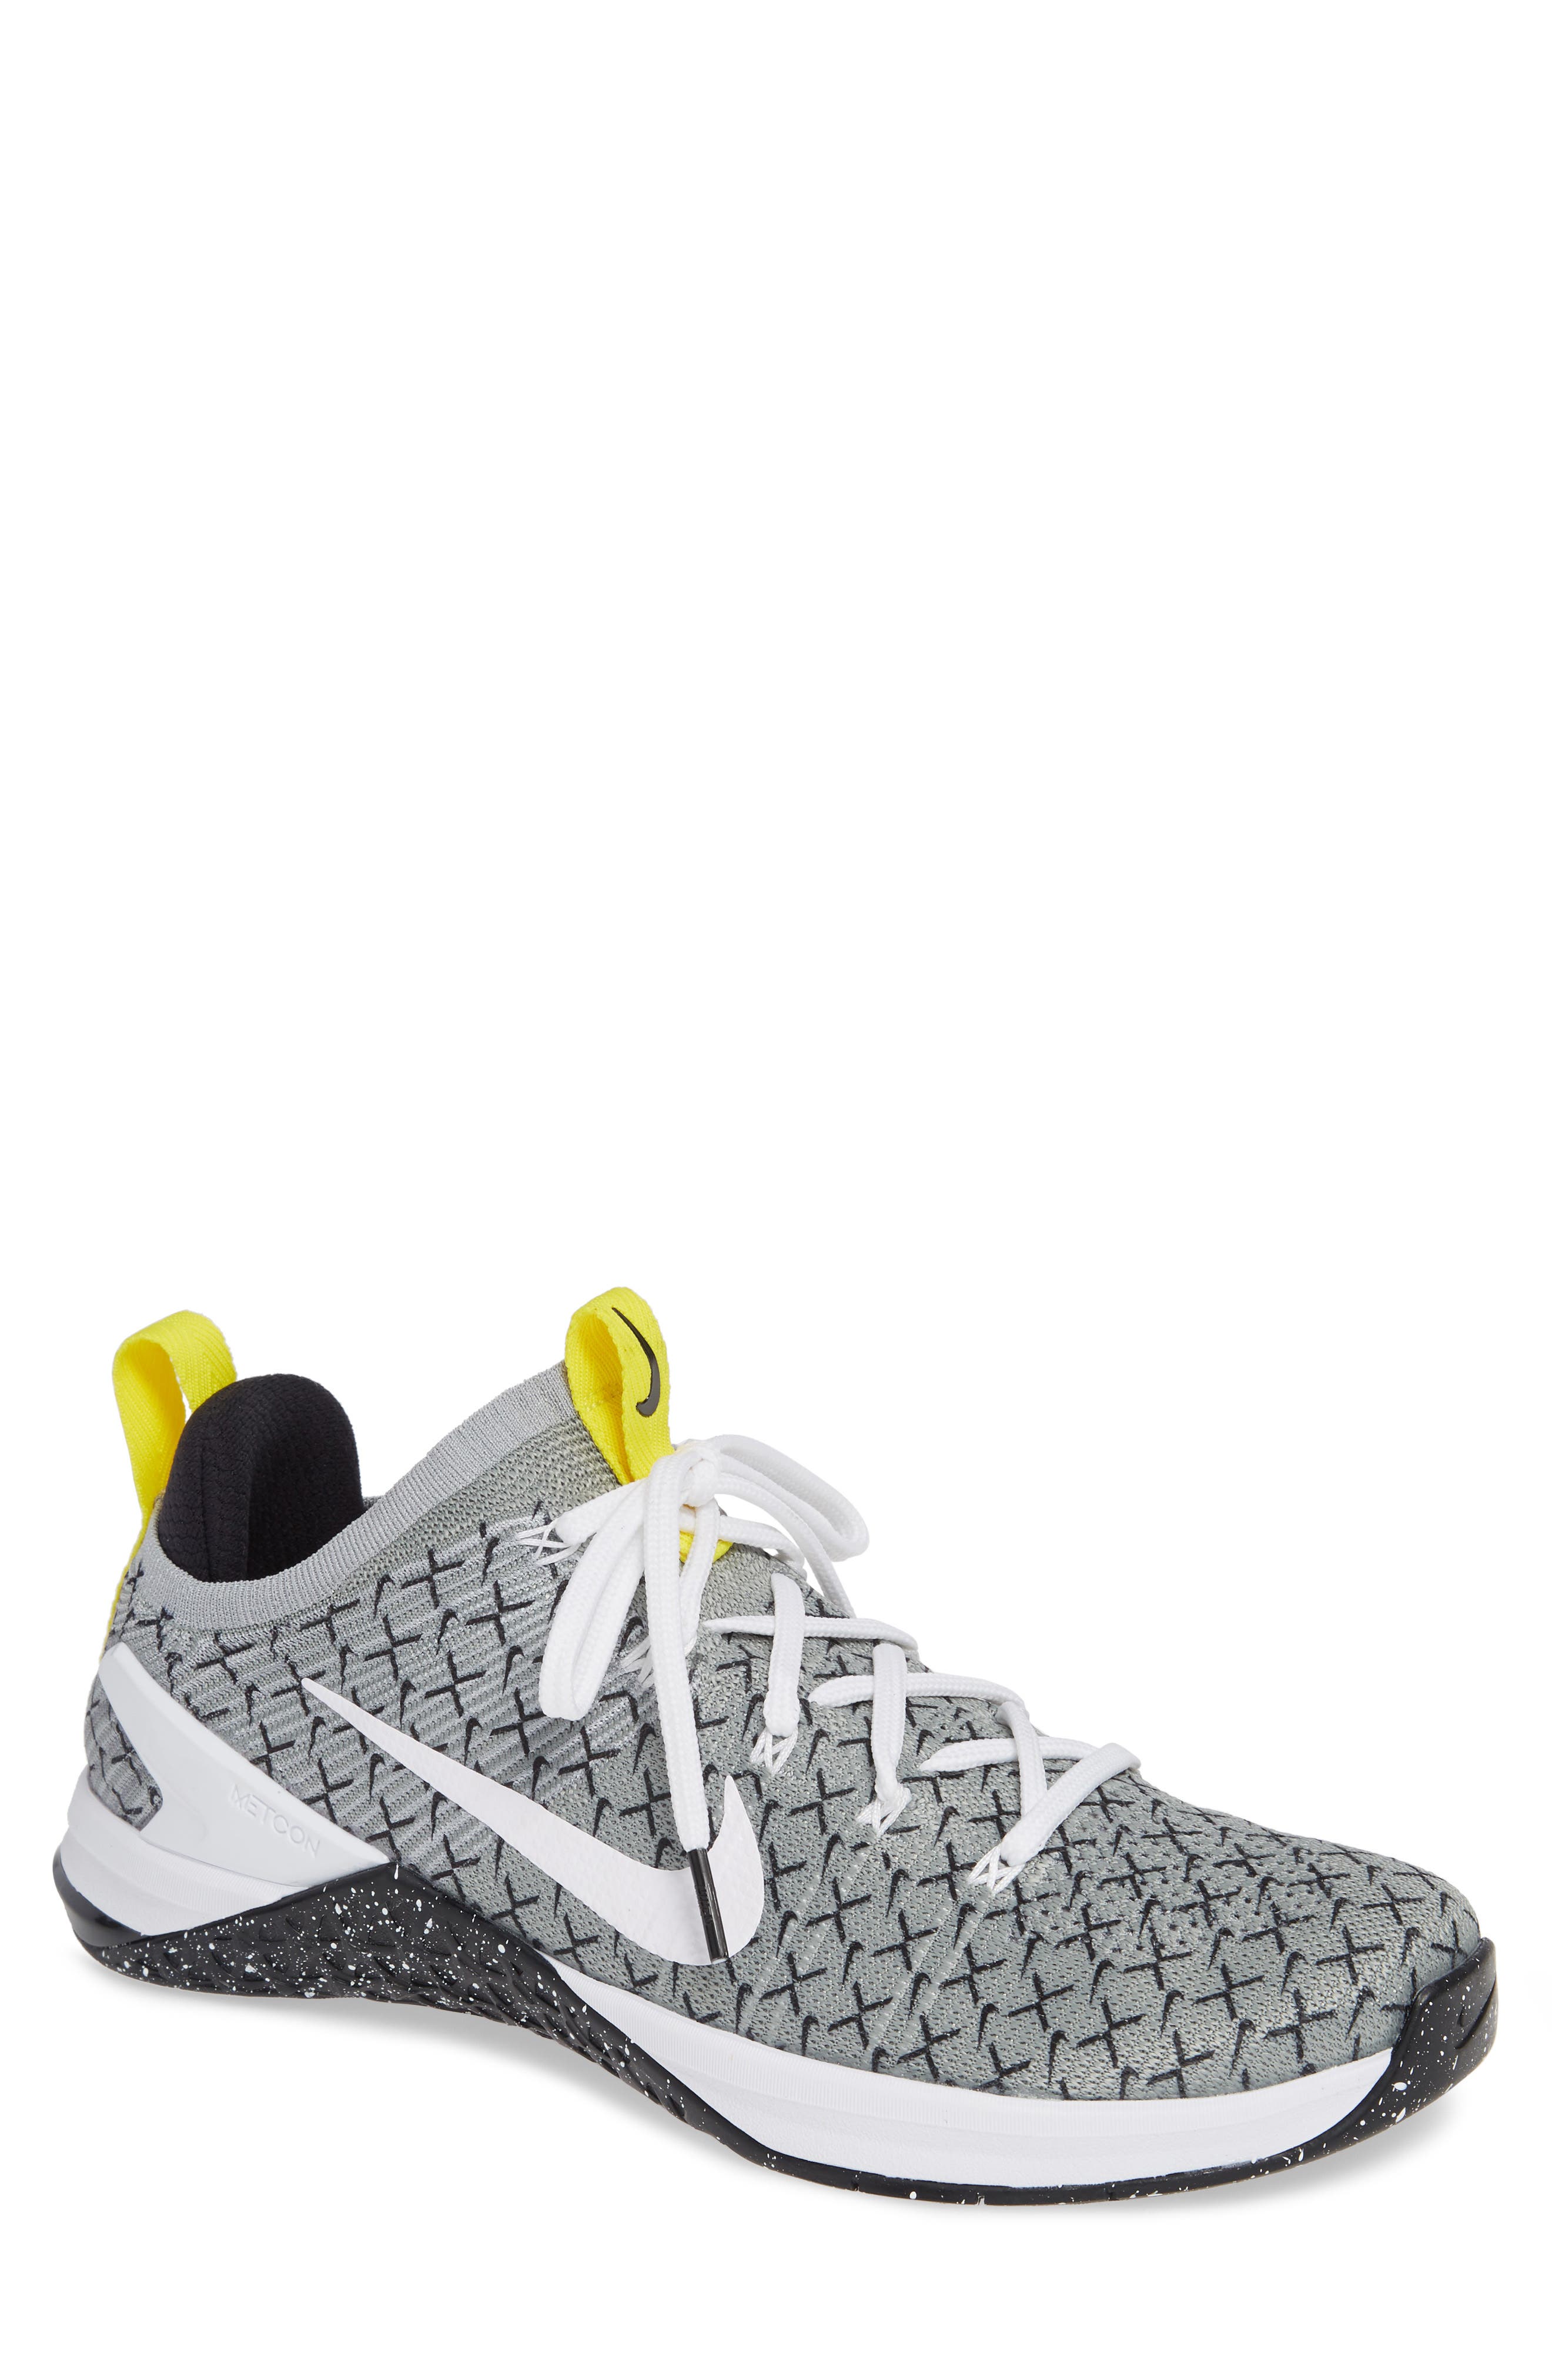 Nike Metcon DSX Flyknit 2 Training Shoe 